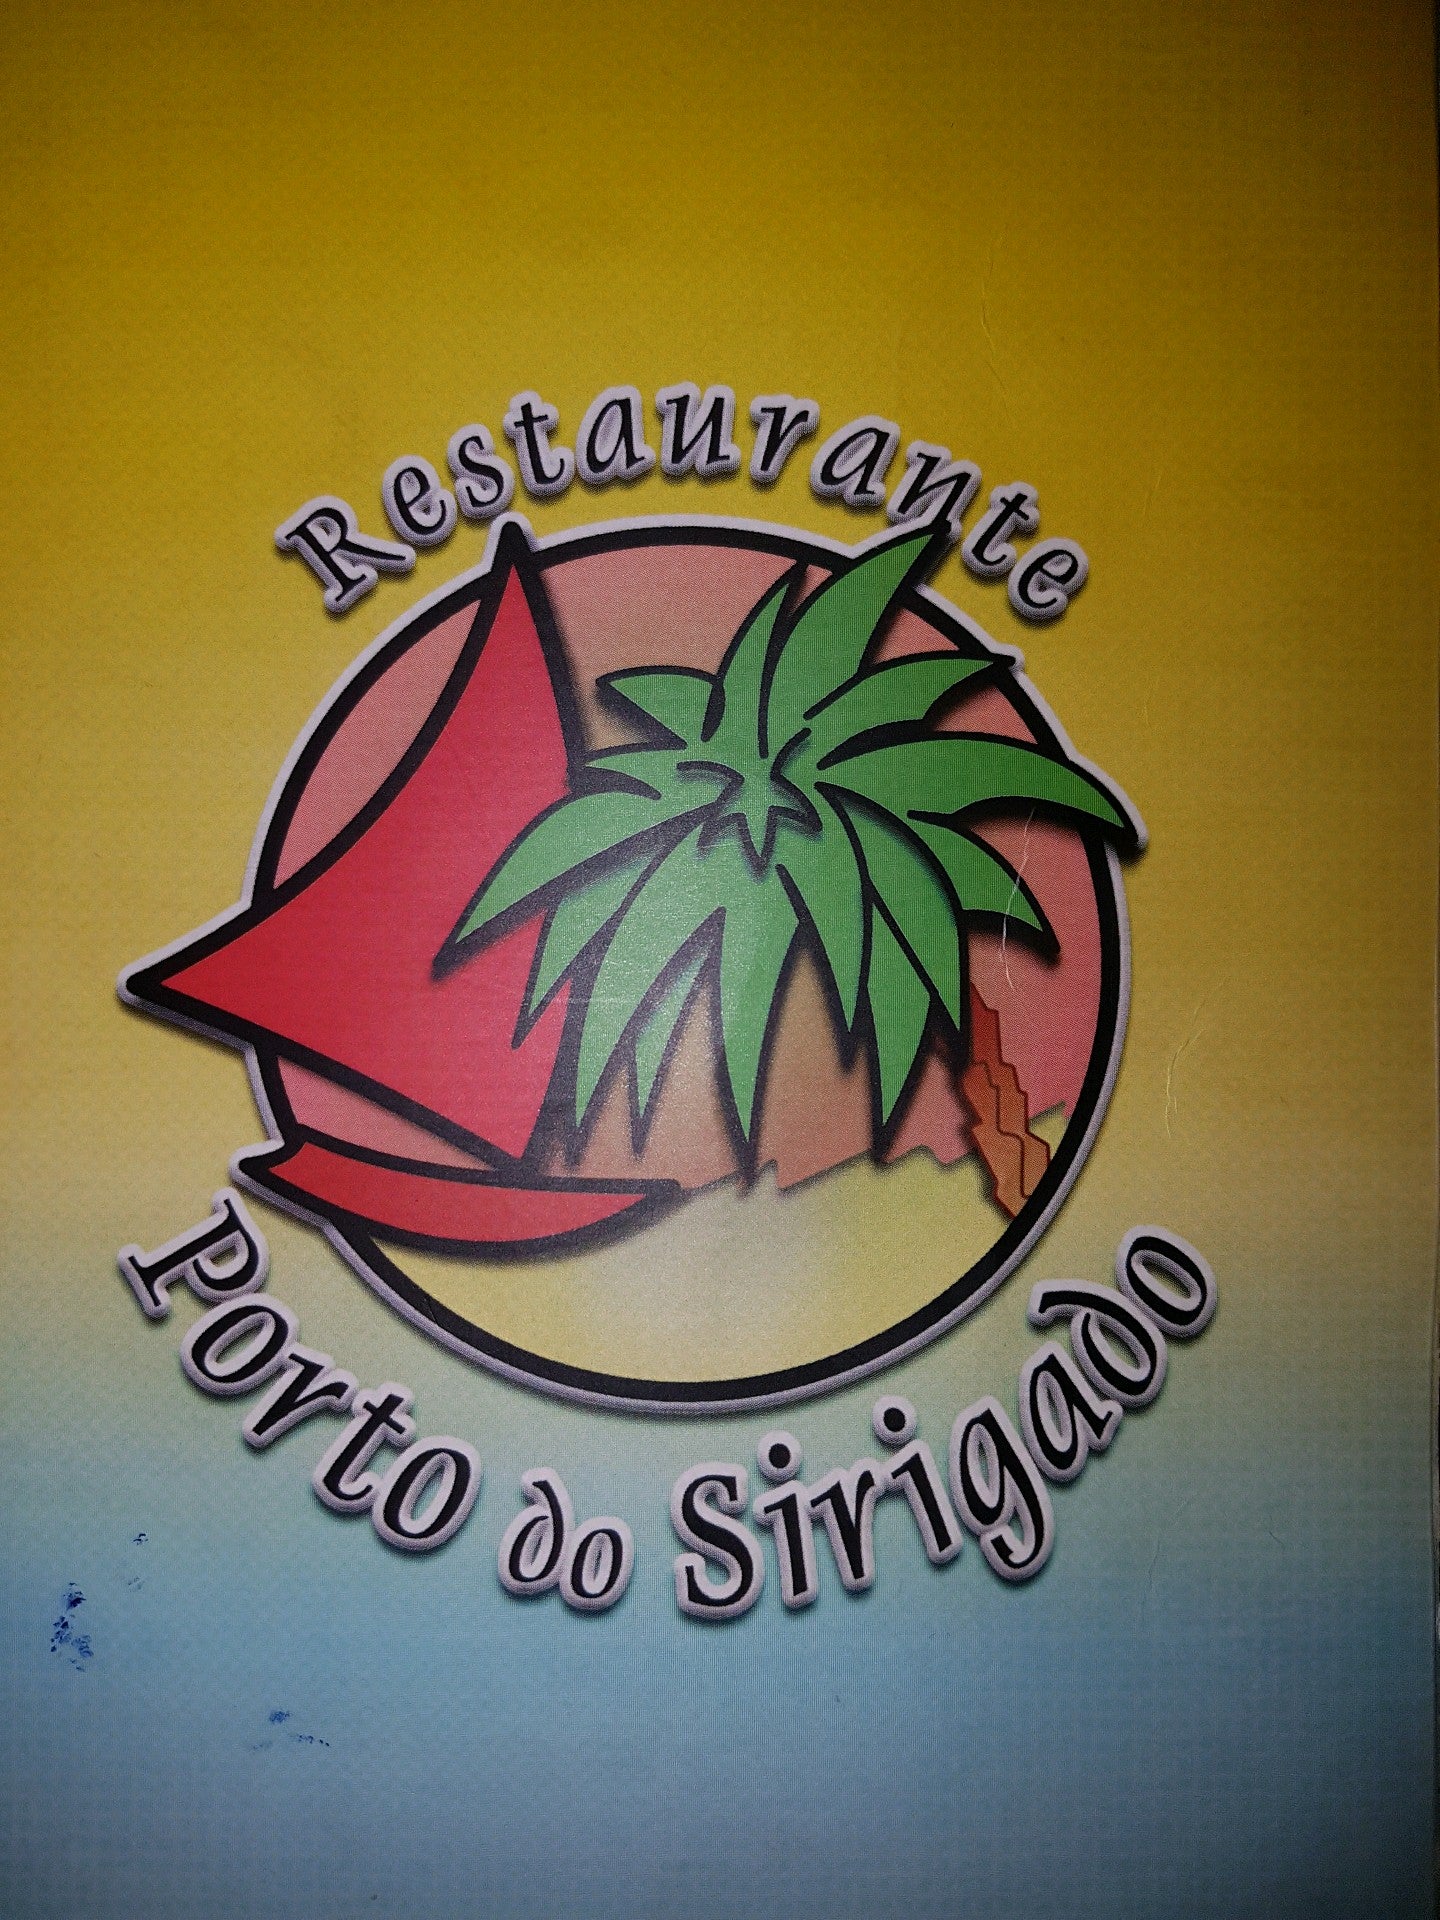 Restaurante Porto do Sirigado